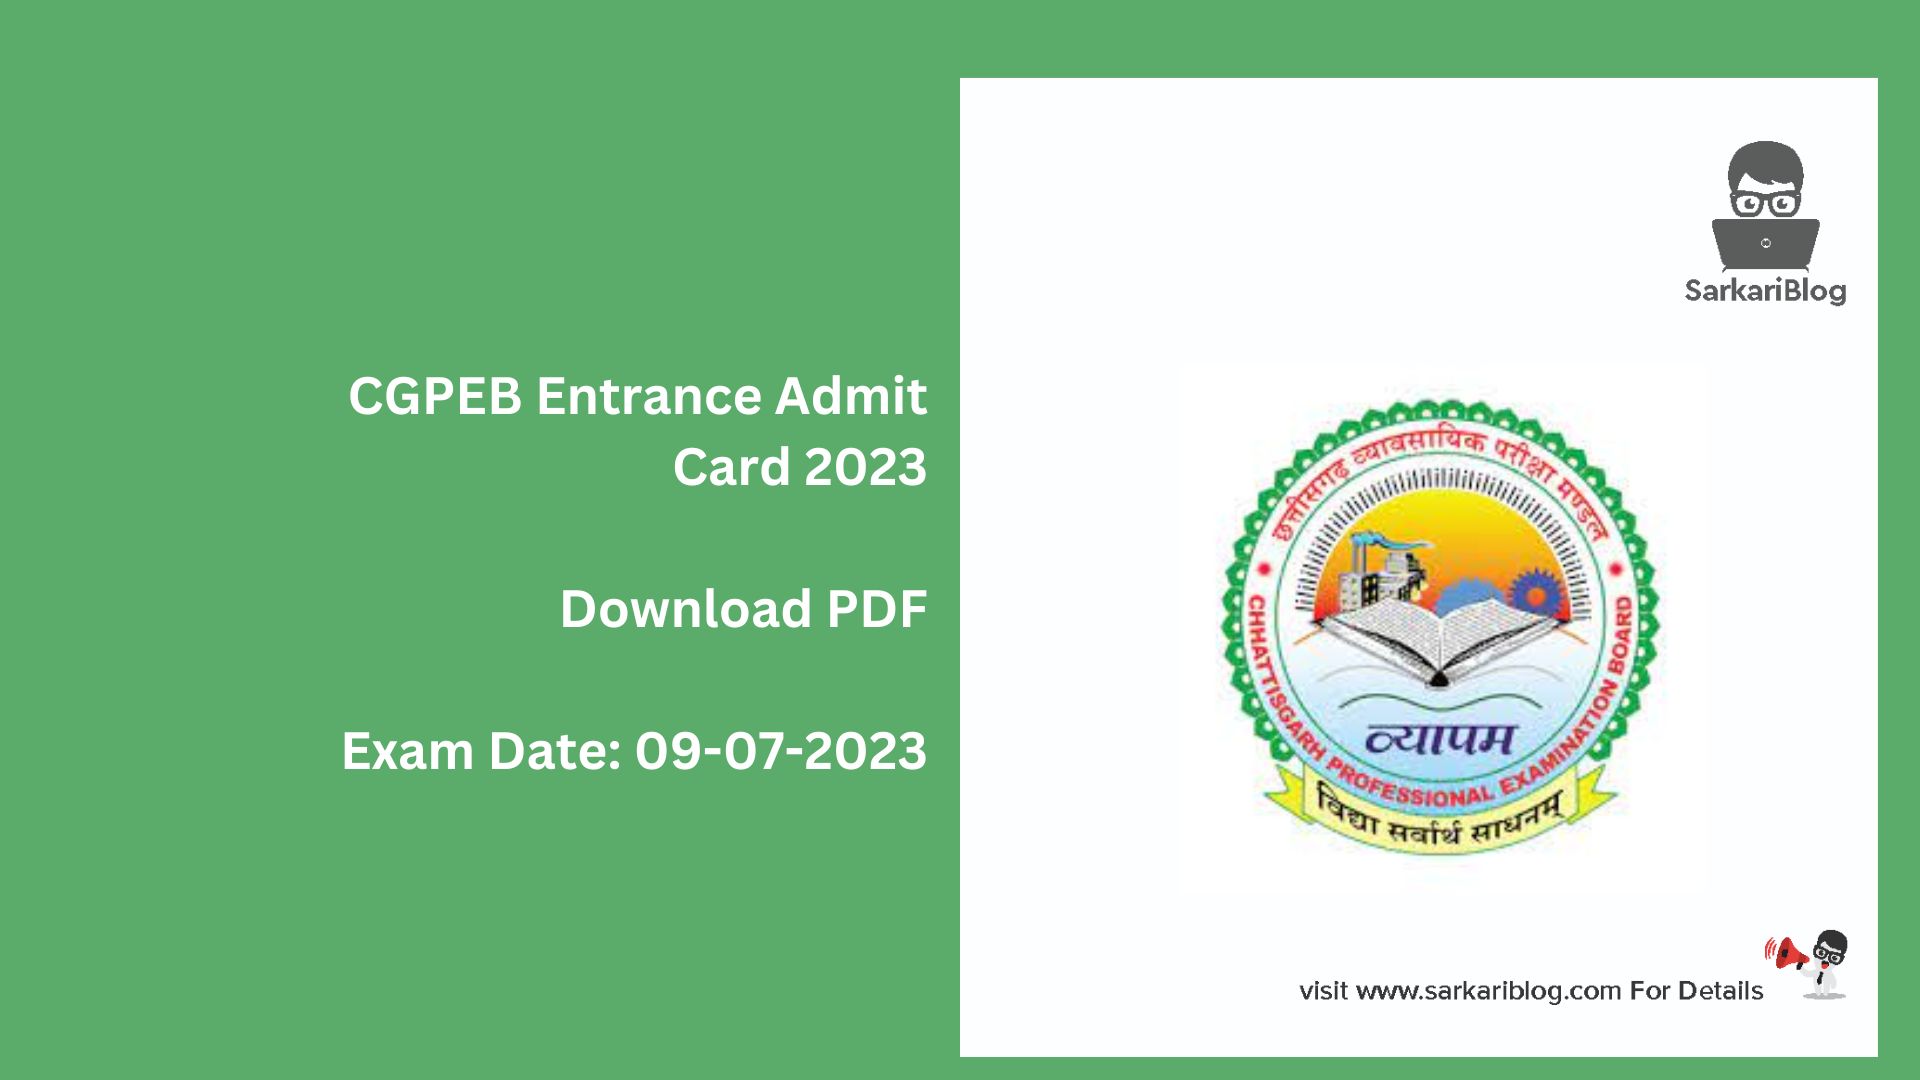 CGPEB Entrance Admit Card 2023